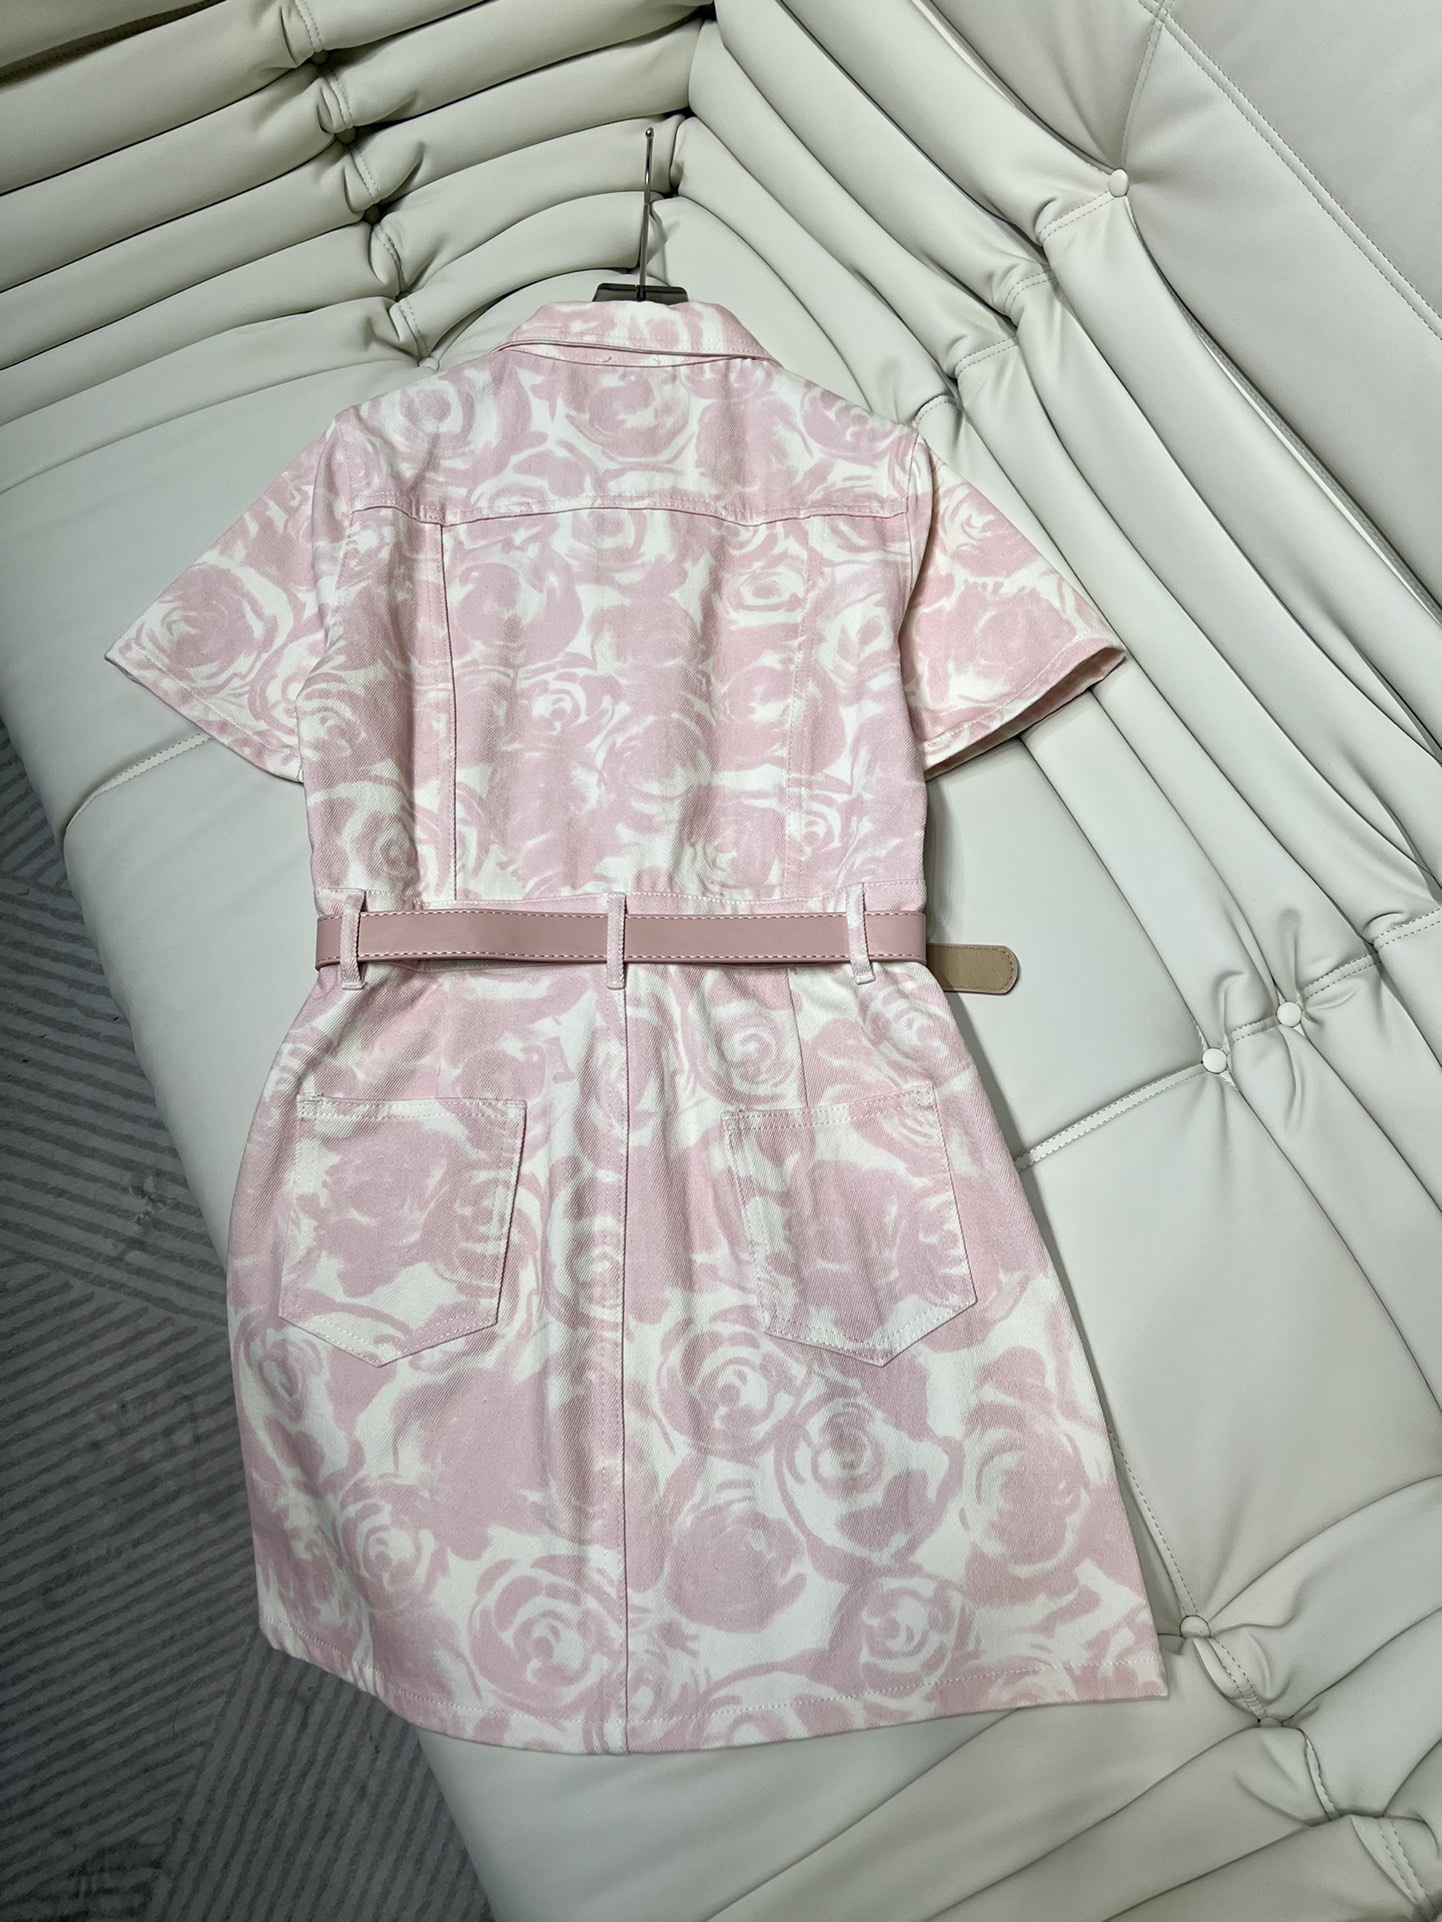 存在感のある バーバリースカートサイズ偽物 ワンピース 半袖 花柄 通勤 レディース 品質保証 ファッション ピンク_4